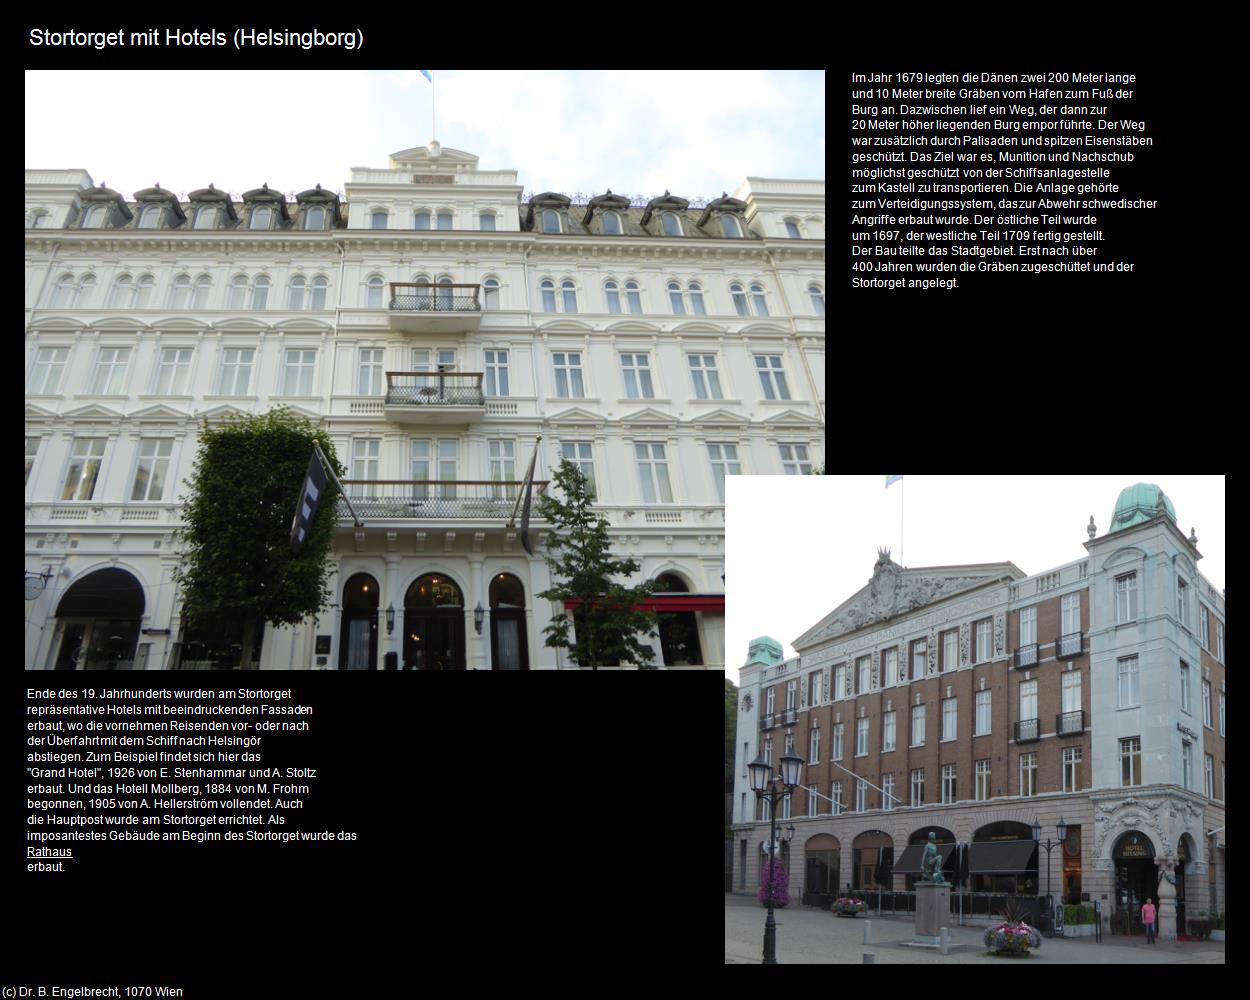 Stortorget mit Hotels (Helsingborg) in Kulturatlas-REISE nach NORWEGEN(c)B.Engelbrecht